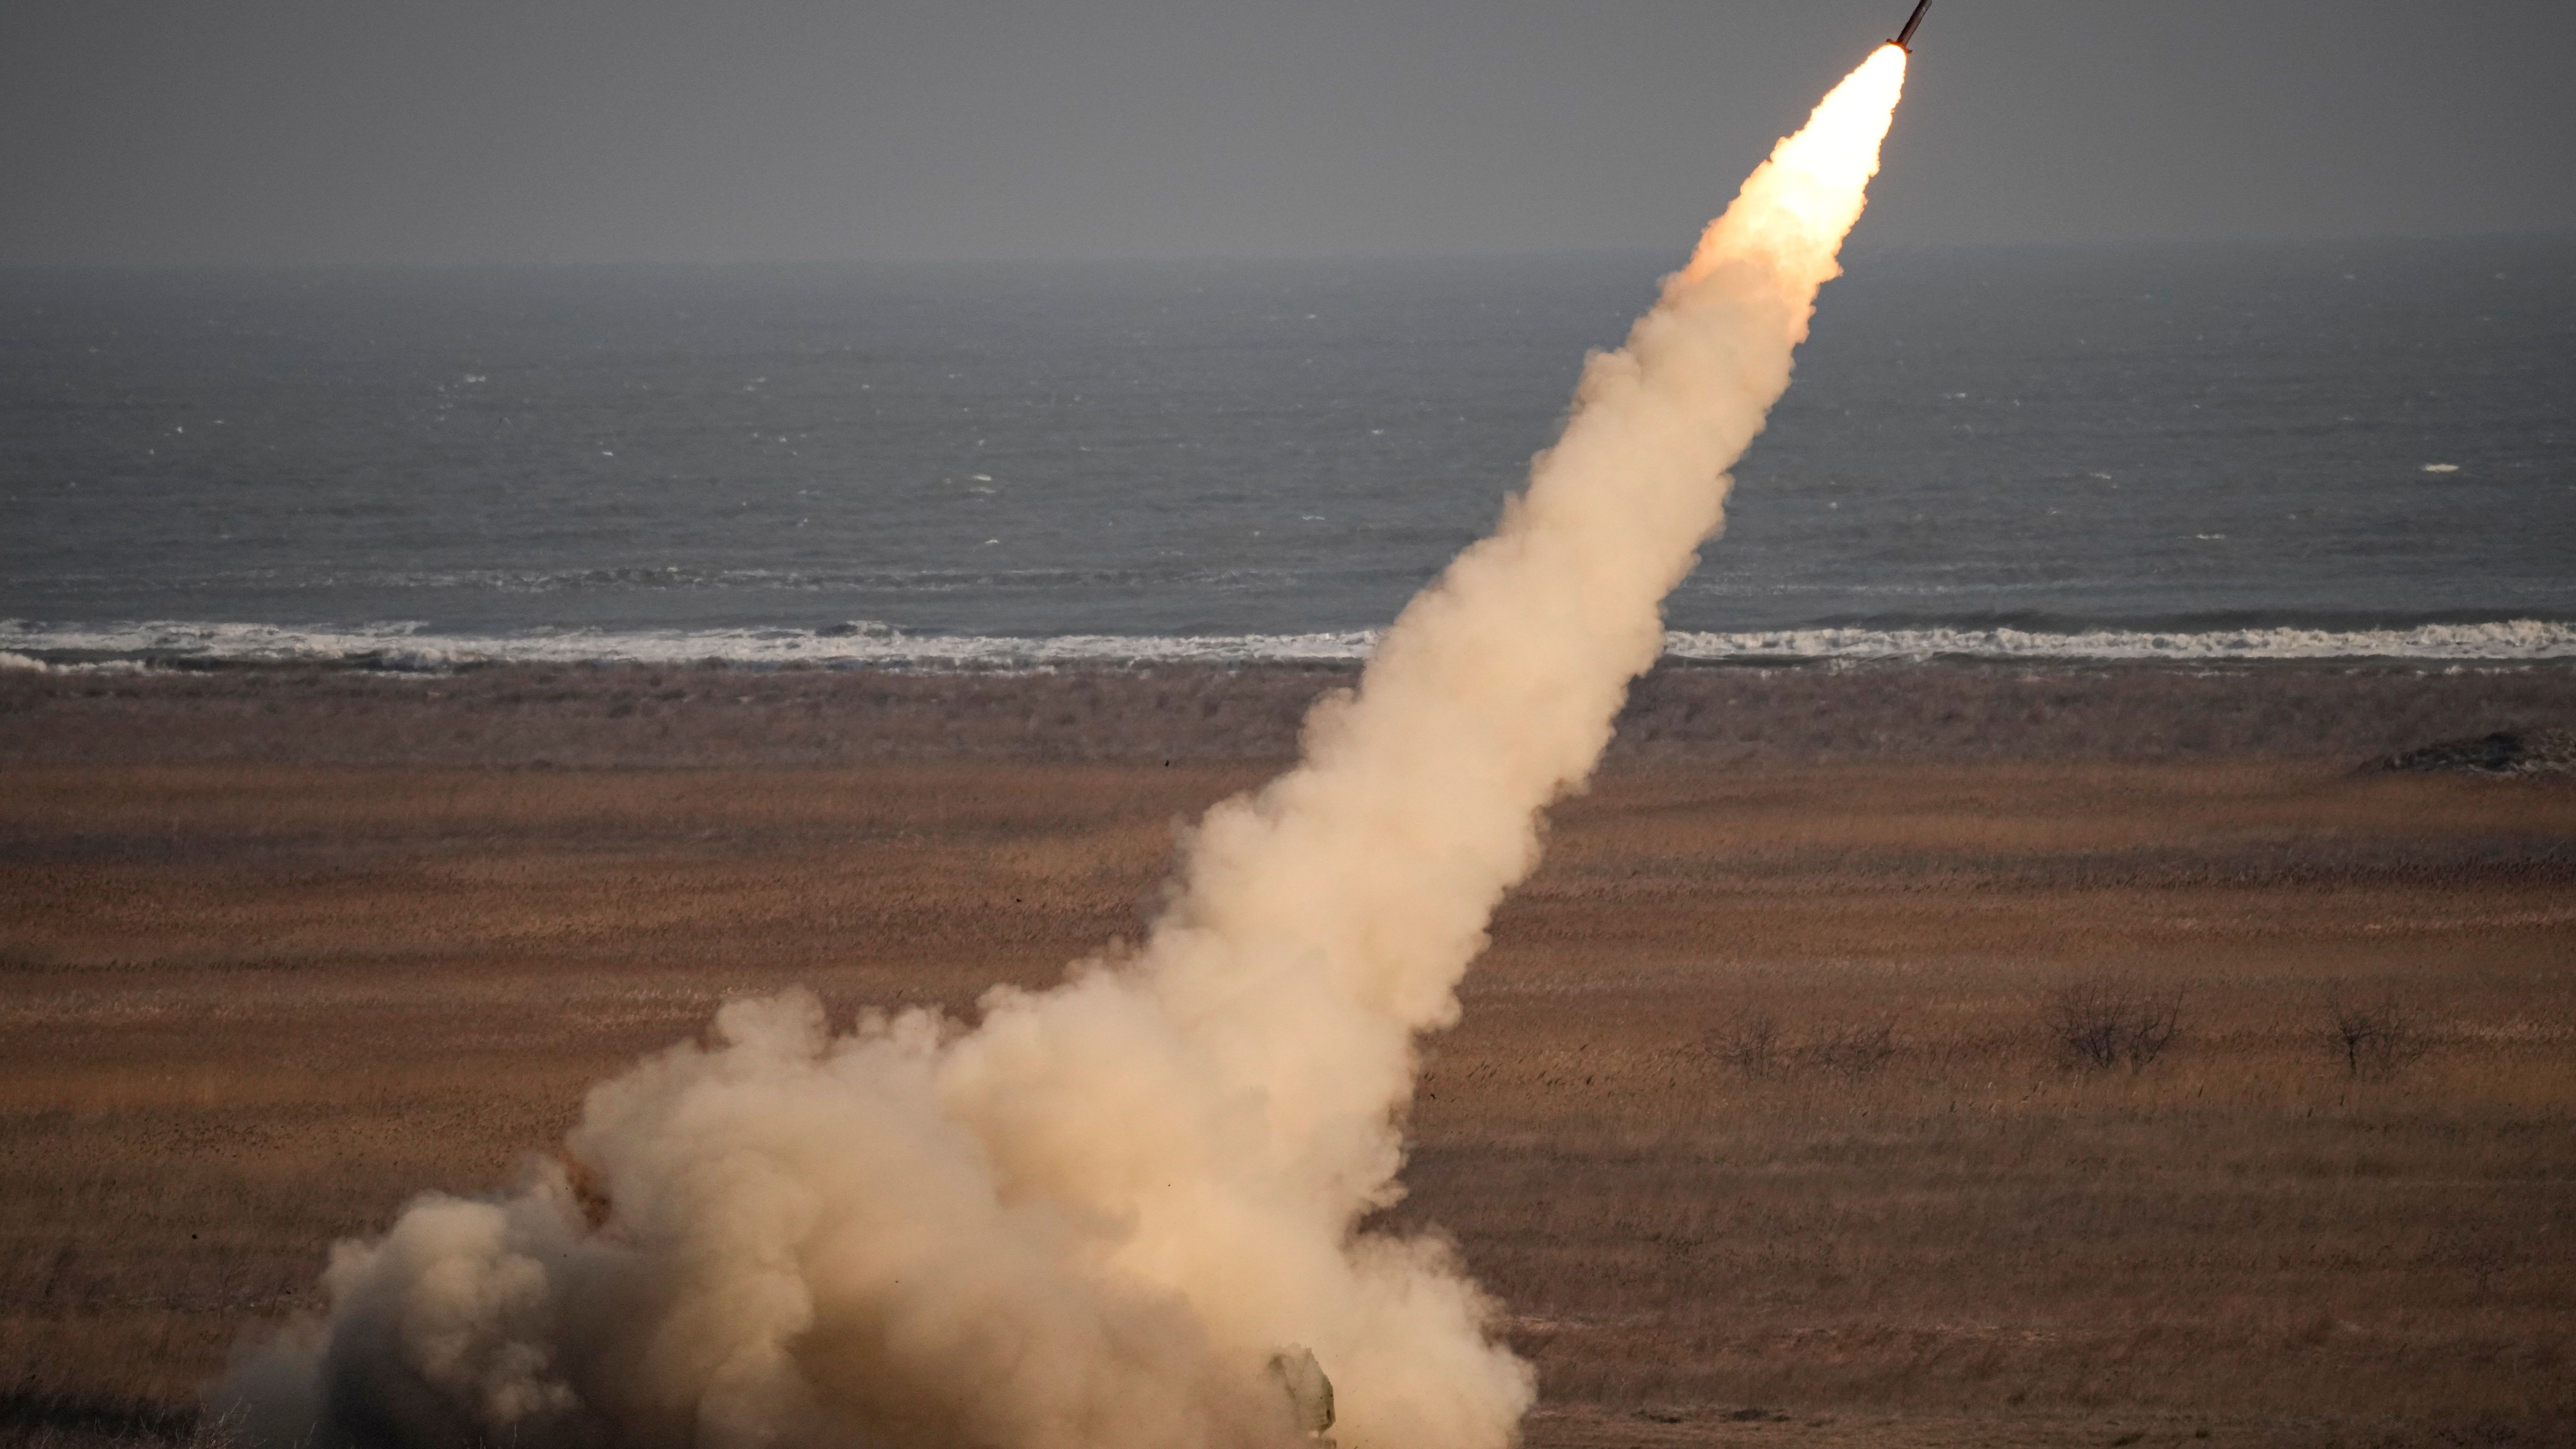 Ein Mehrfachraketenwerfer vom Typ "HIMARS" feuert eine Rakete ab.